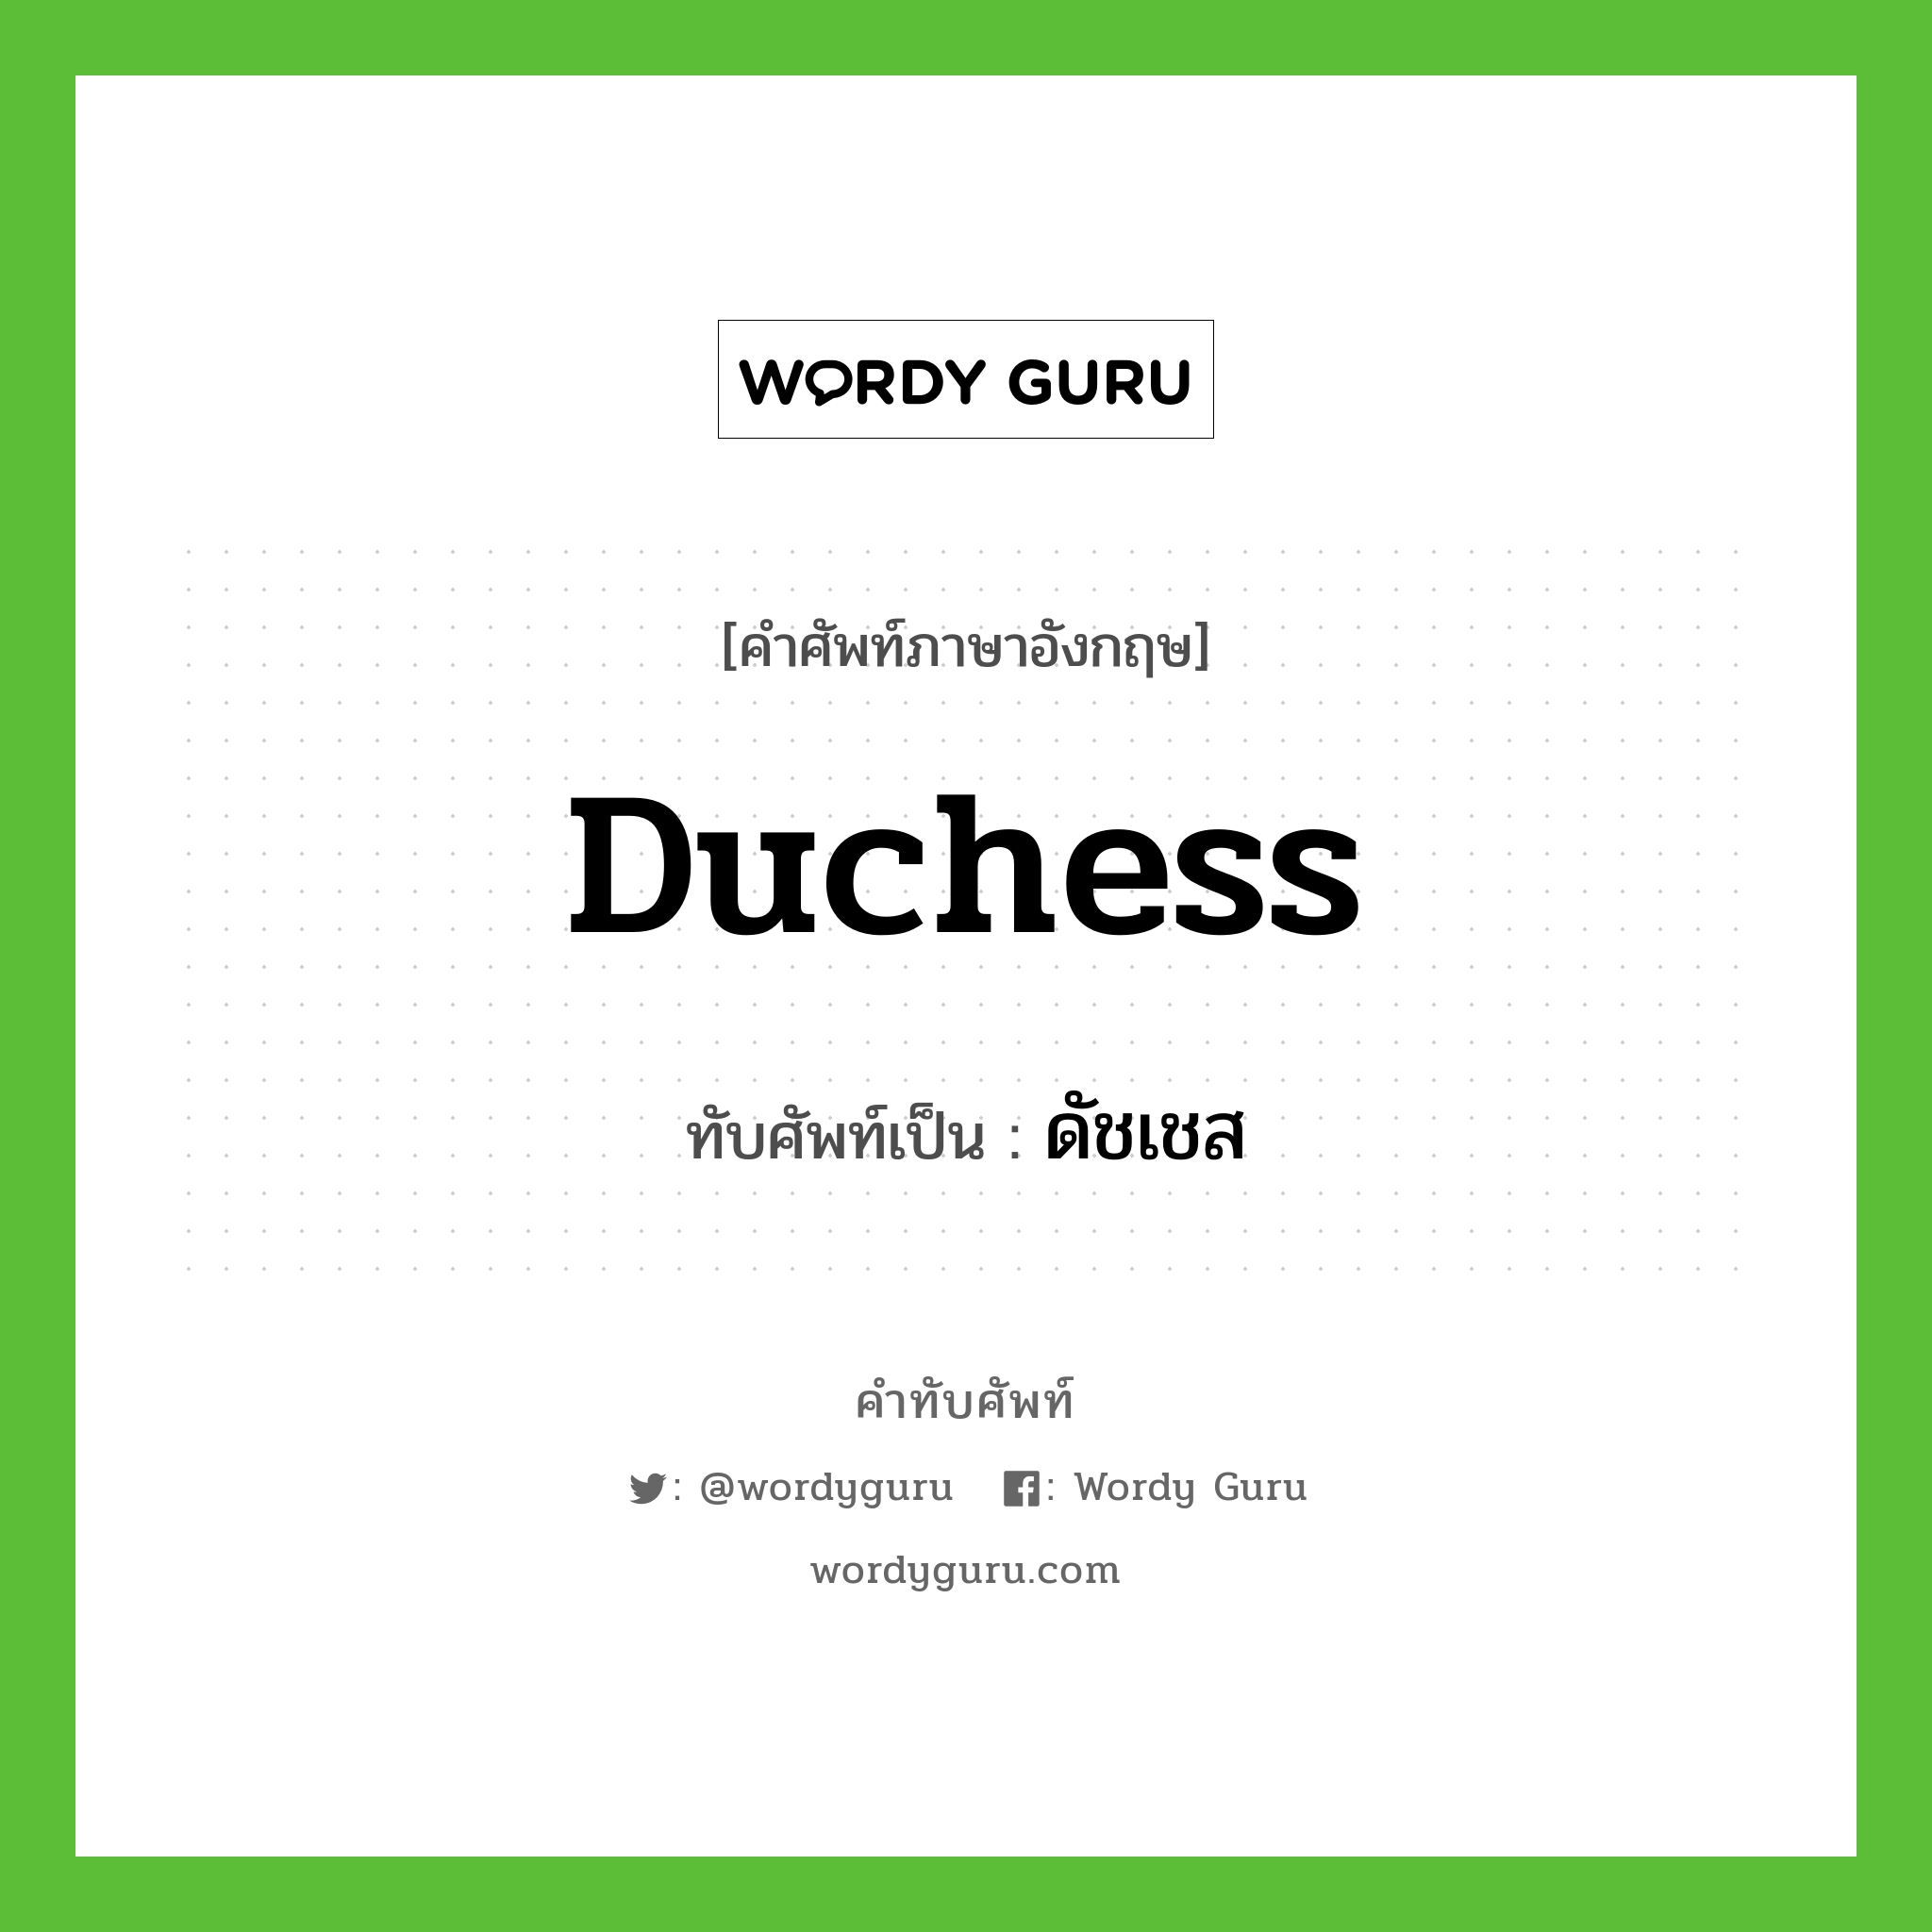 duchess เขียนเป็นคำไทยว่าอะไร?, คำศัพท์ภาษาอังกฤษ duchess ทับศัพท์เป็น ดัชเชส